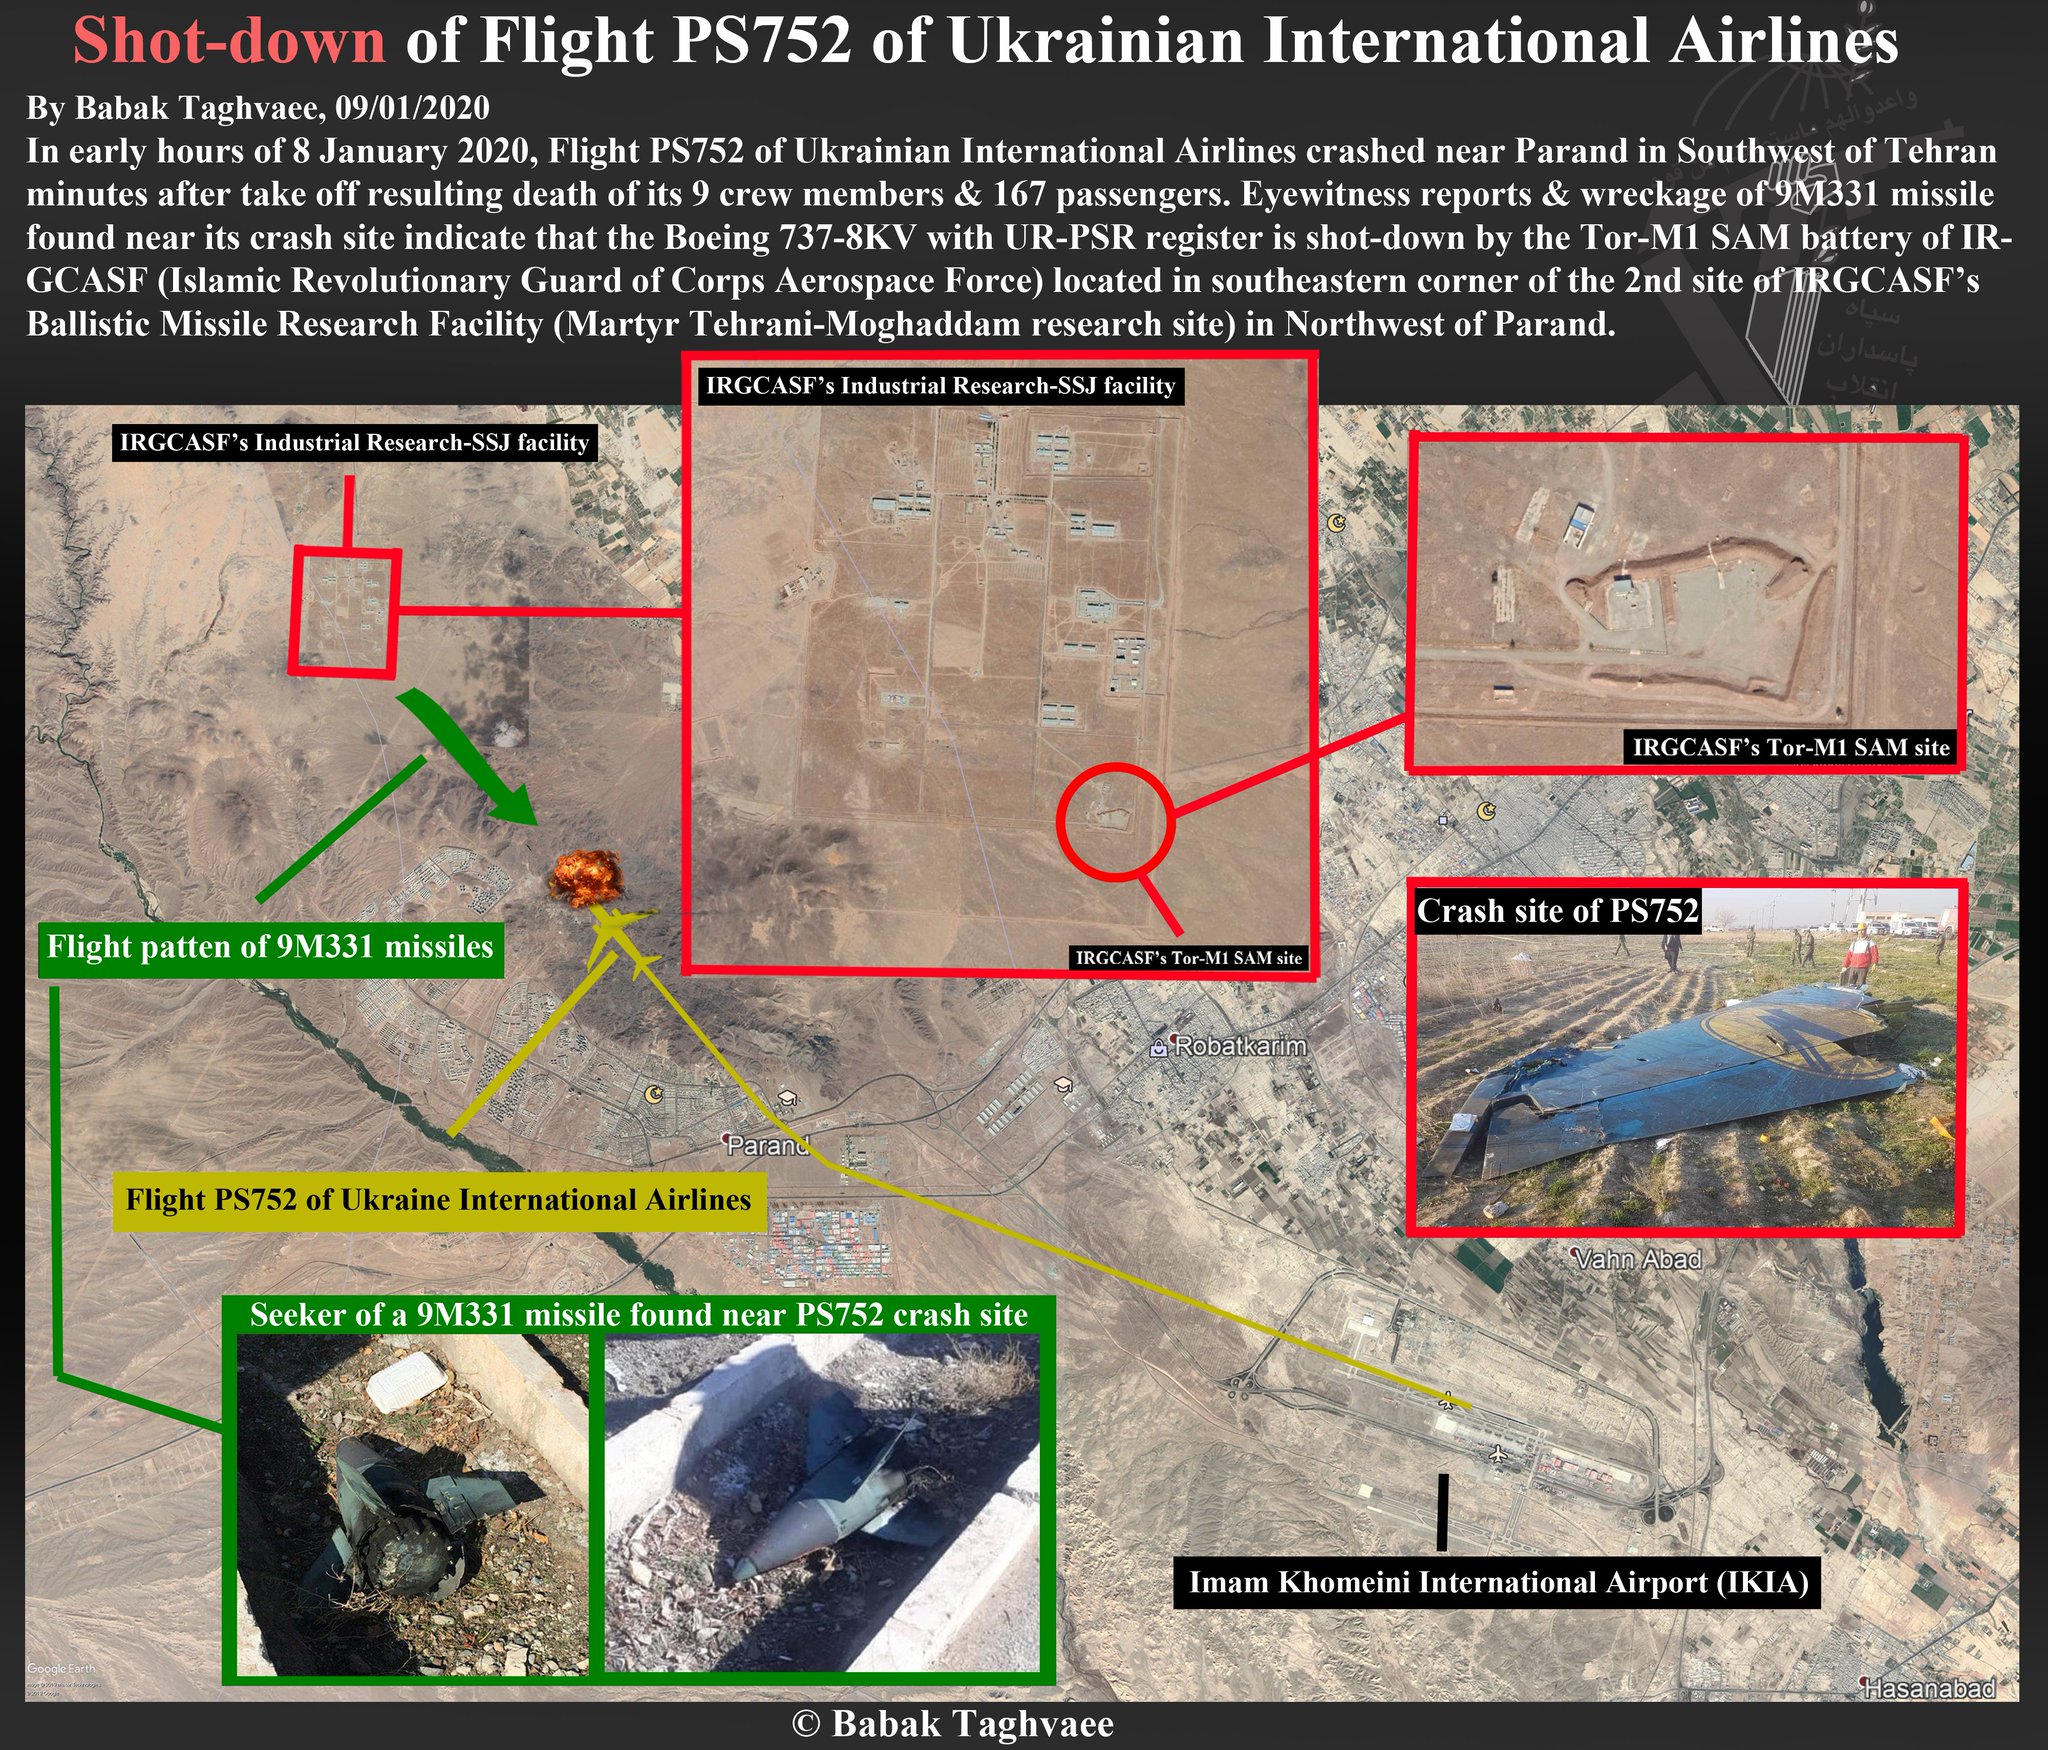 Accidente Ukraine International Airlines (UIA) en Irán. - Foro Aviones, Aeropuertos y Líneas Aéreas